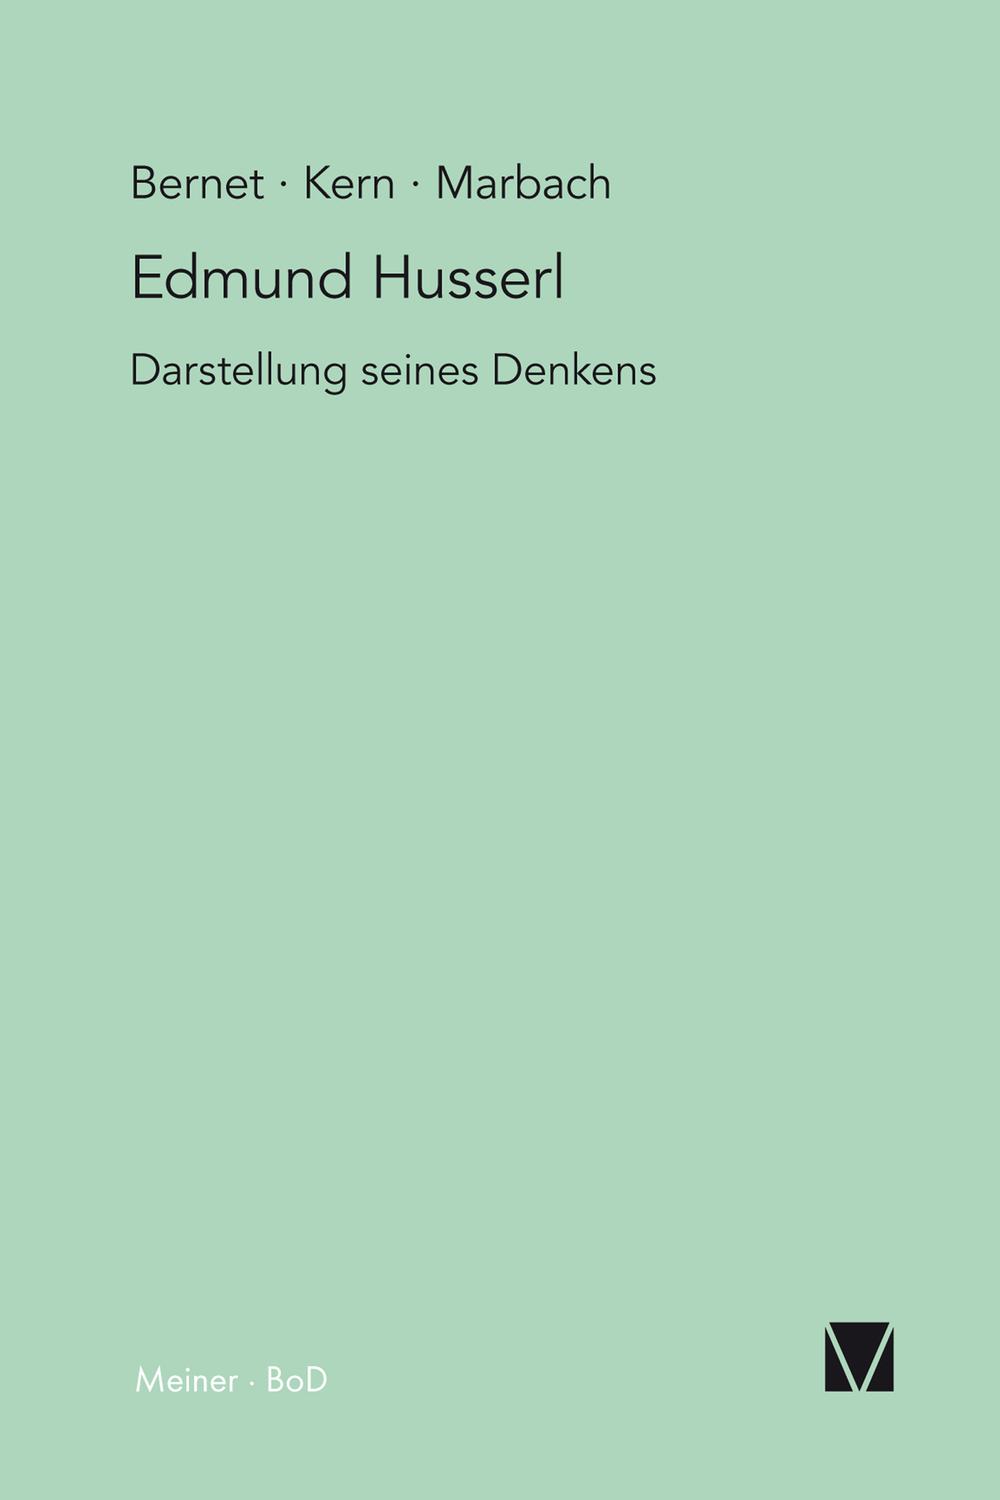 Edmund Husserl - Darstellung seines Denkens - Rudolf Bernet, Iso Kern, Eduard Marbach,,